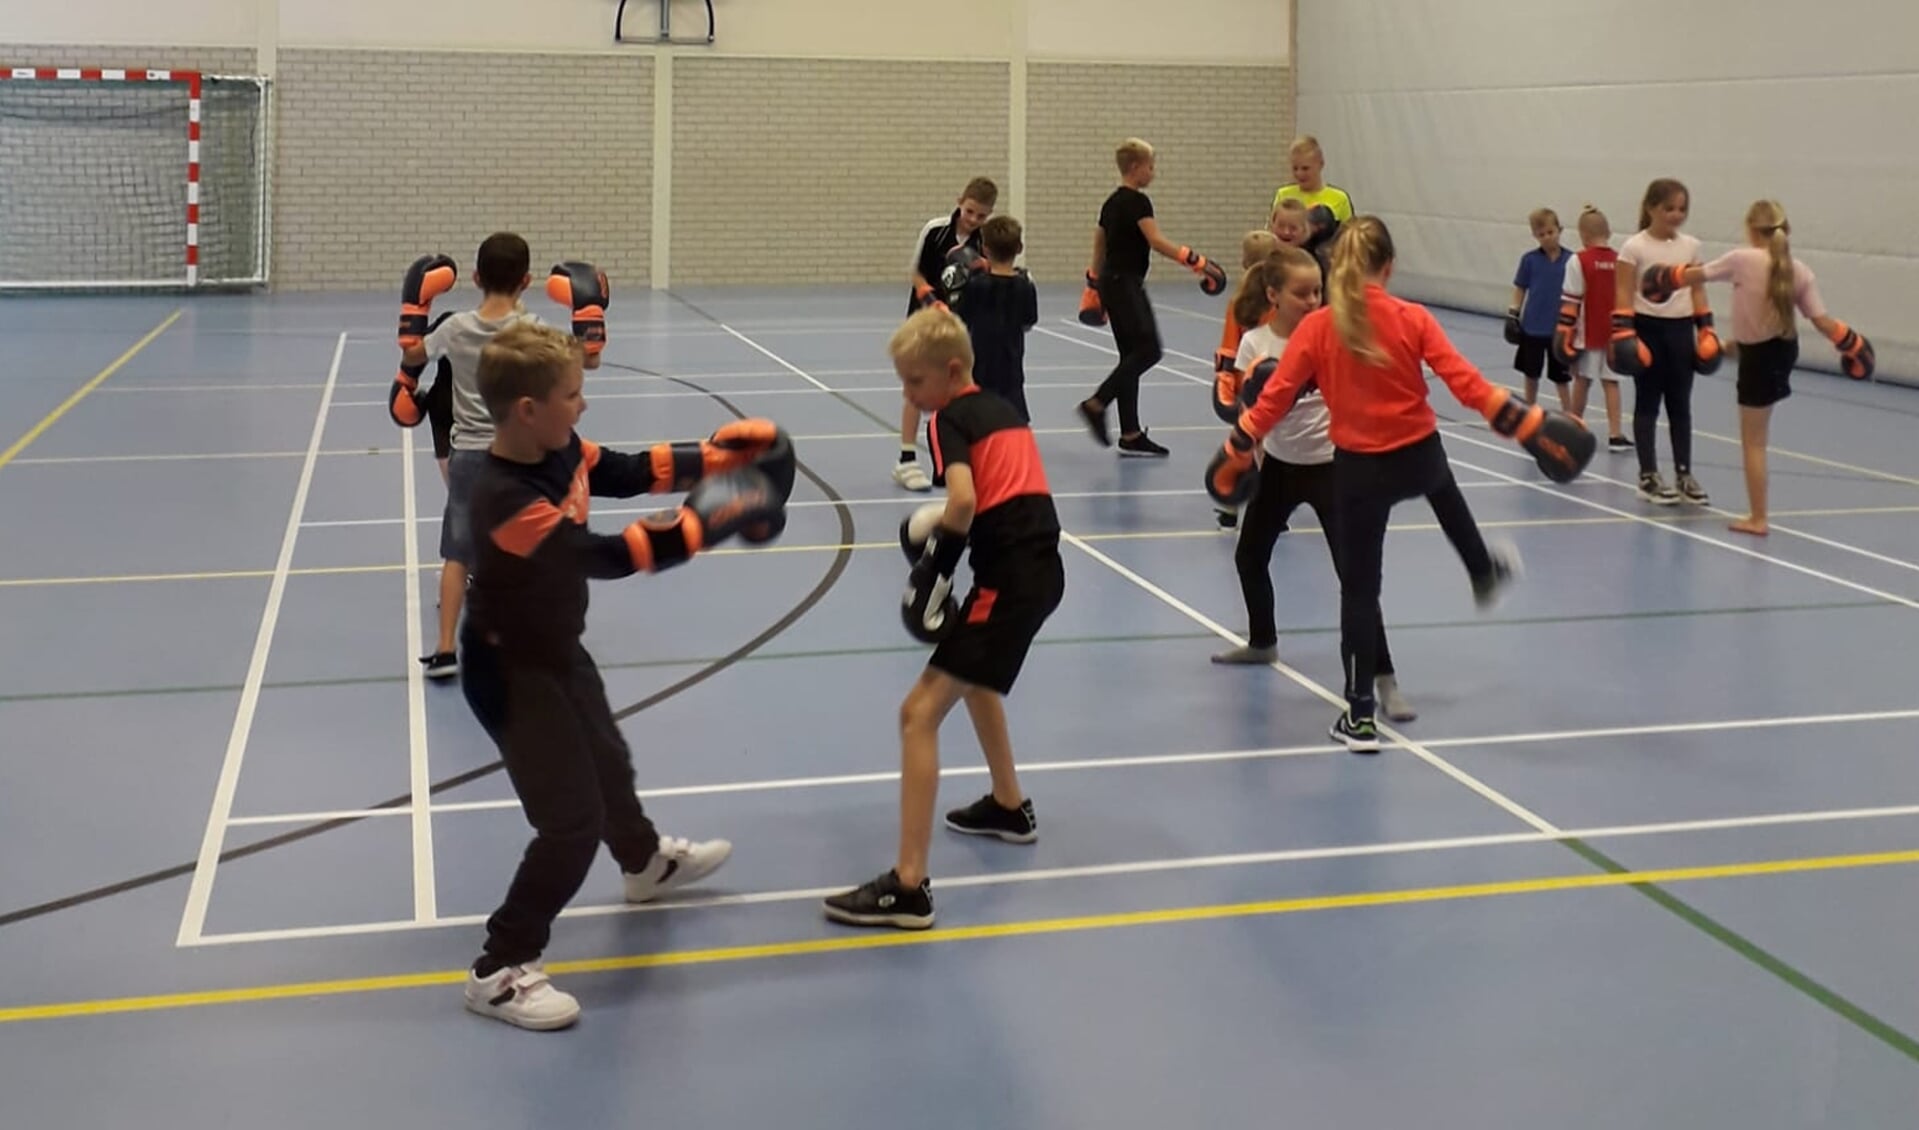 Kickboksen is één van de sporten die in Wekerom wordt aangeboden bij het succesvolle SAM Multisport Junior. Maar liefst 30 kinderen nemen deel aan dit sportprogramma in het dorp.